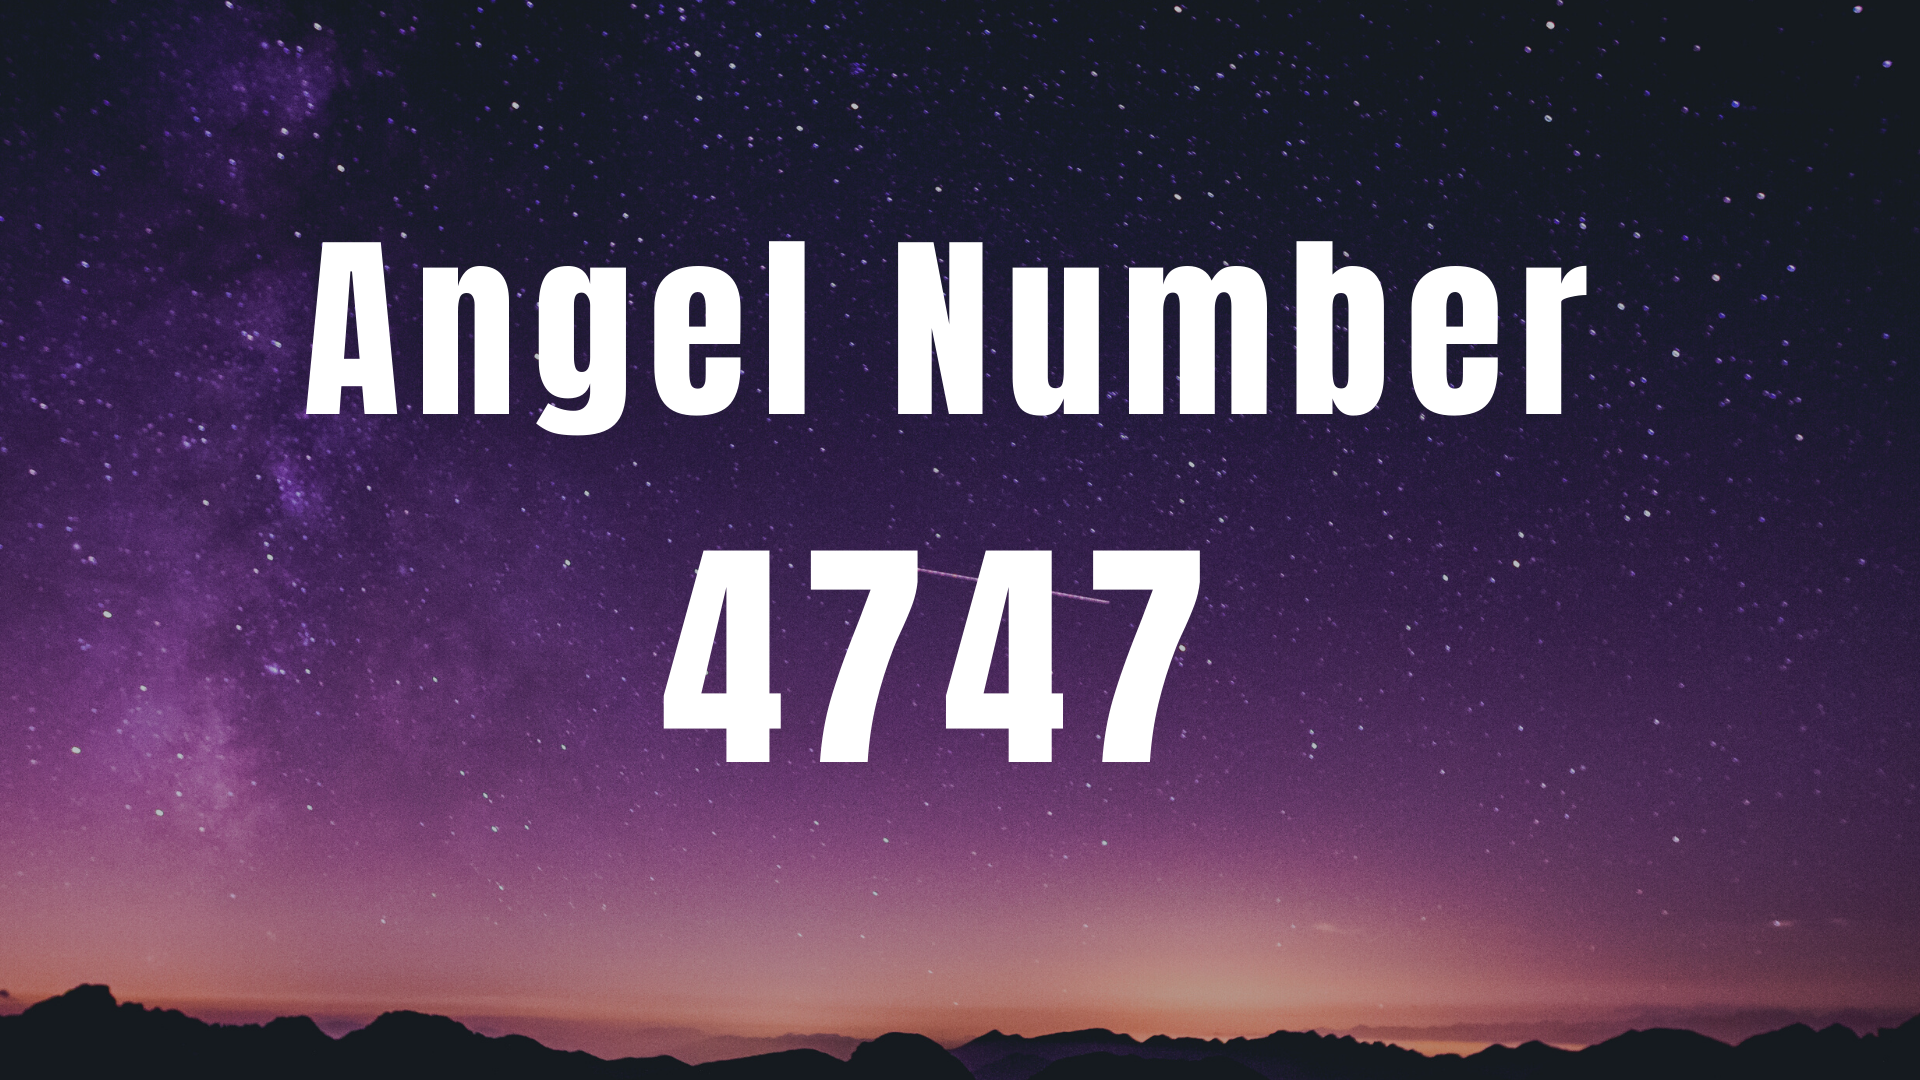 Angel Number 4747